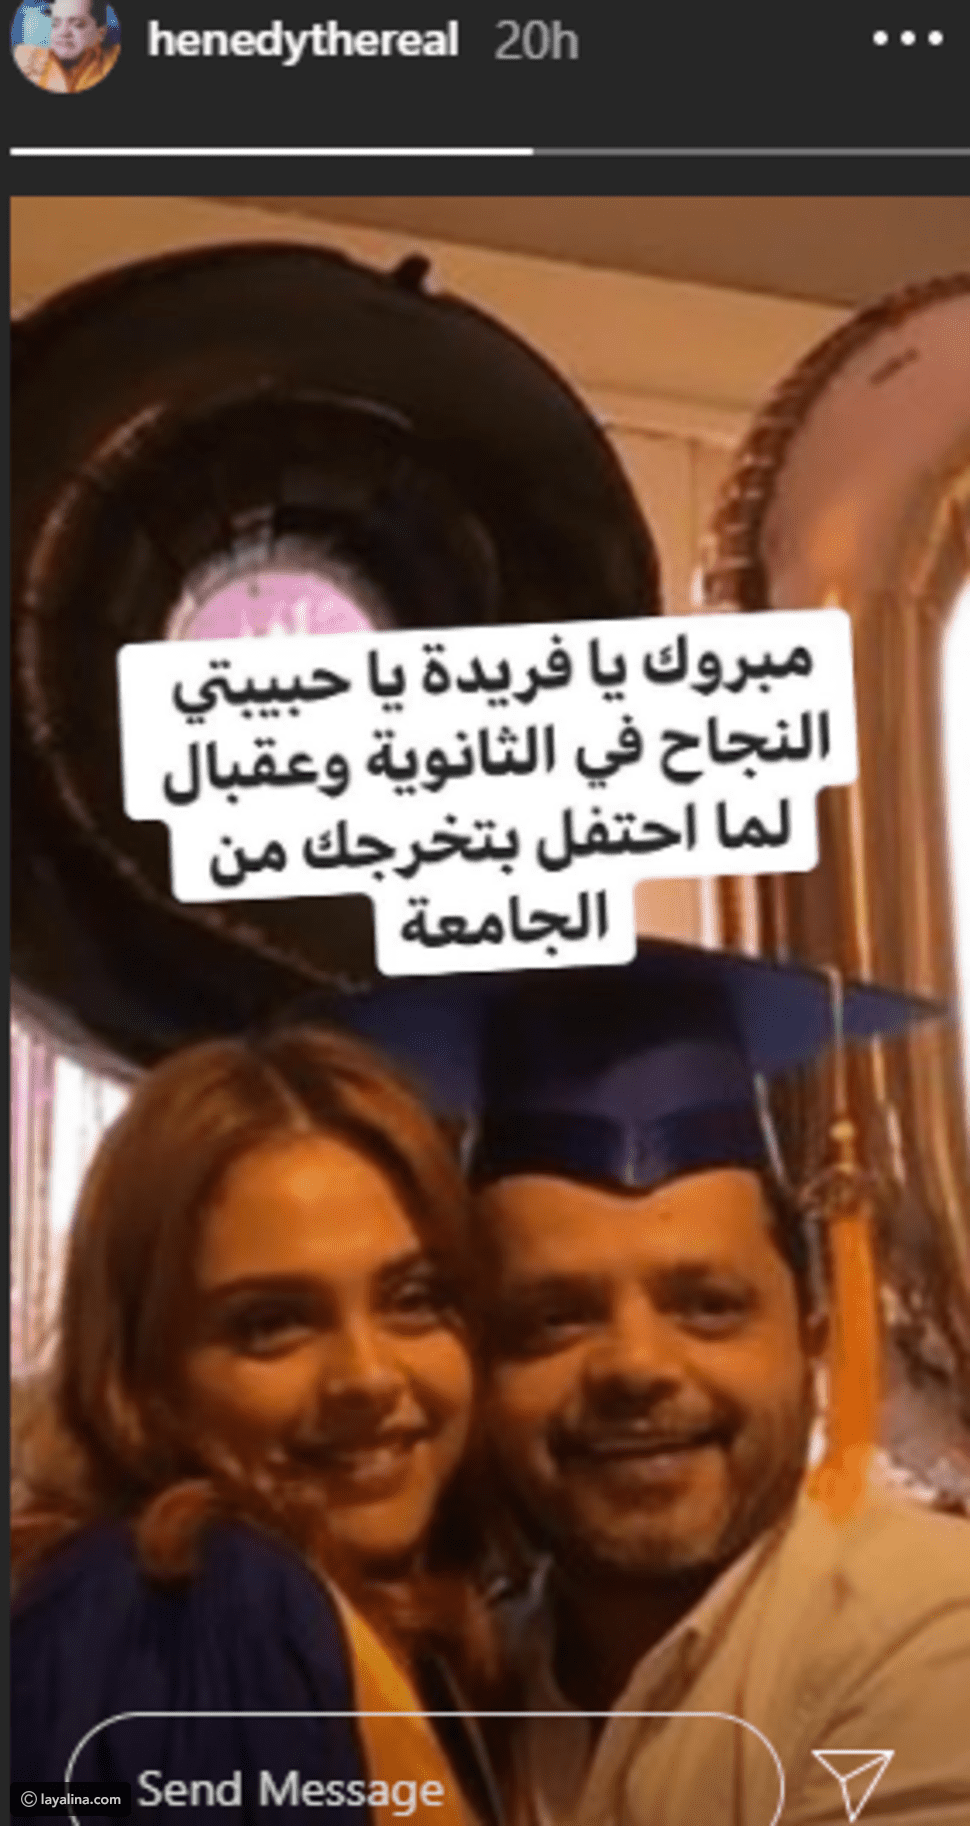 Mohamed Henedy kızının mezuniyetini kutladı